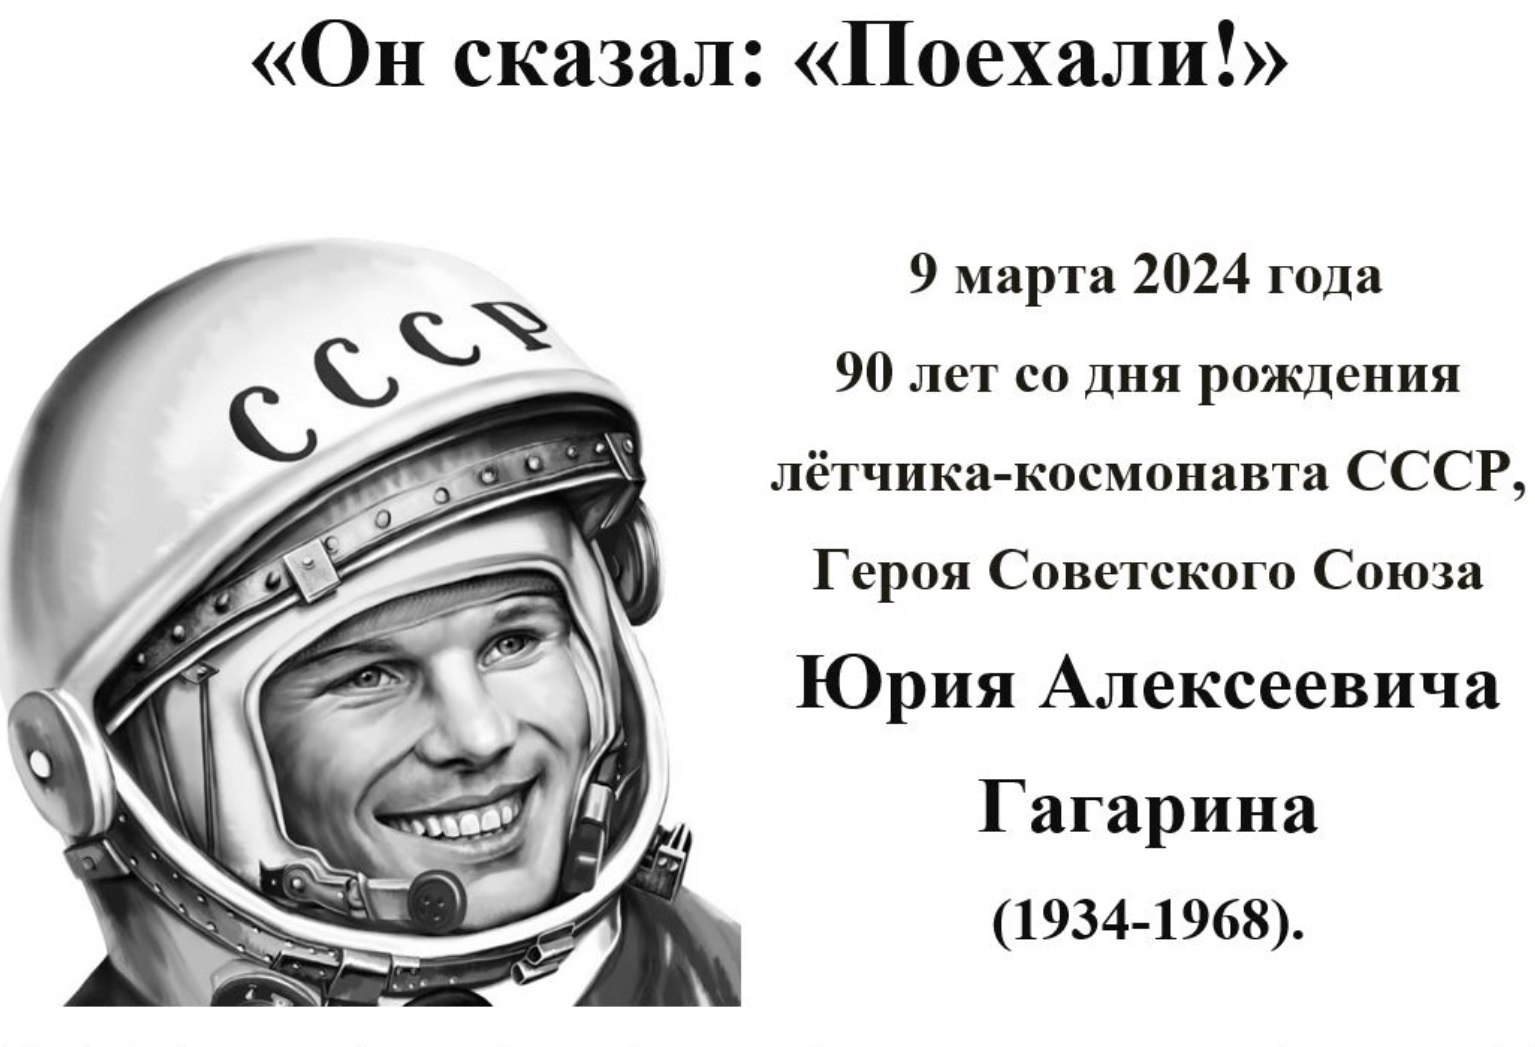 90-летие со дня рождения Ю.А. Гагарина.